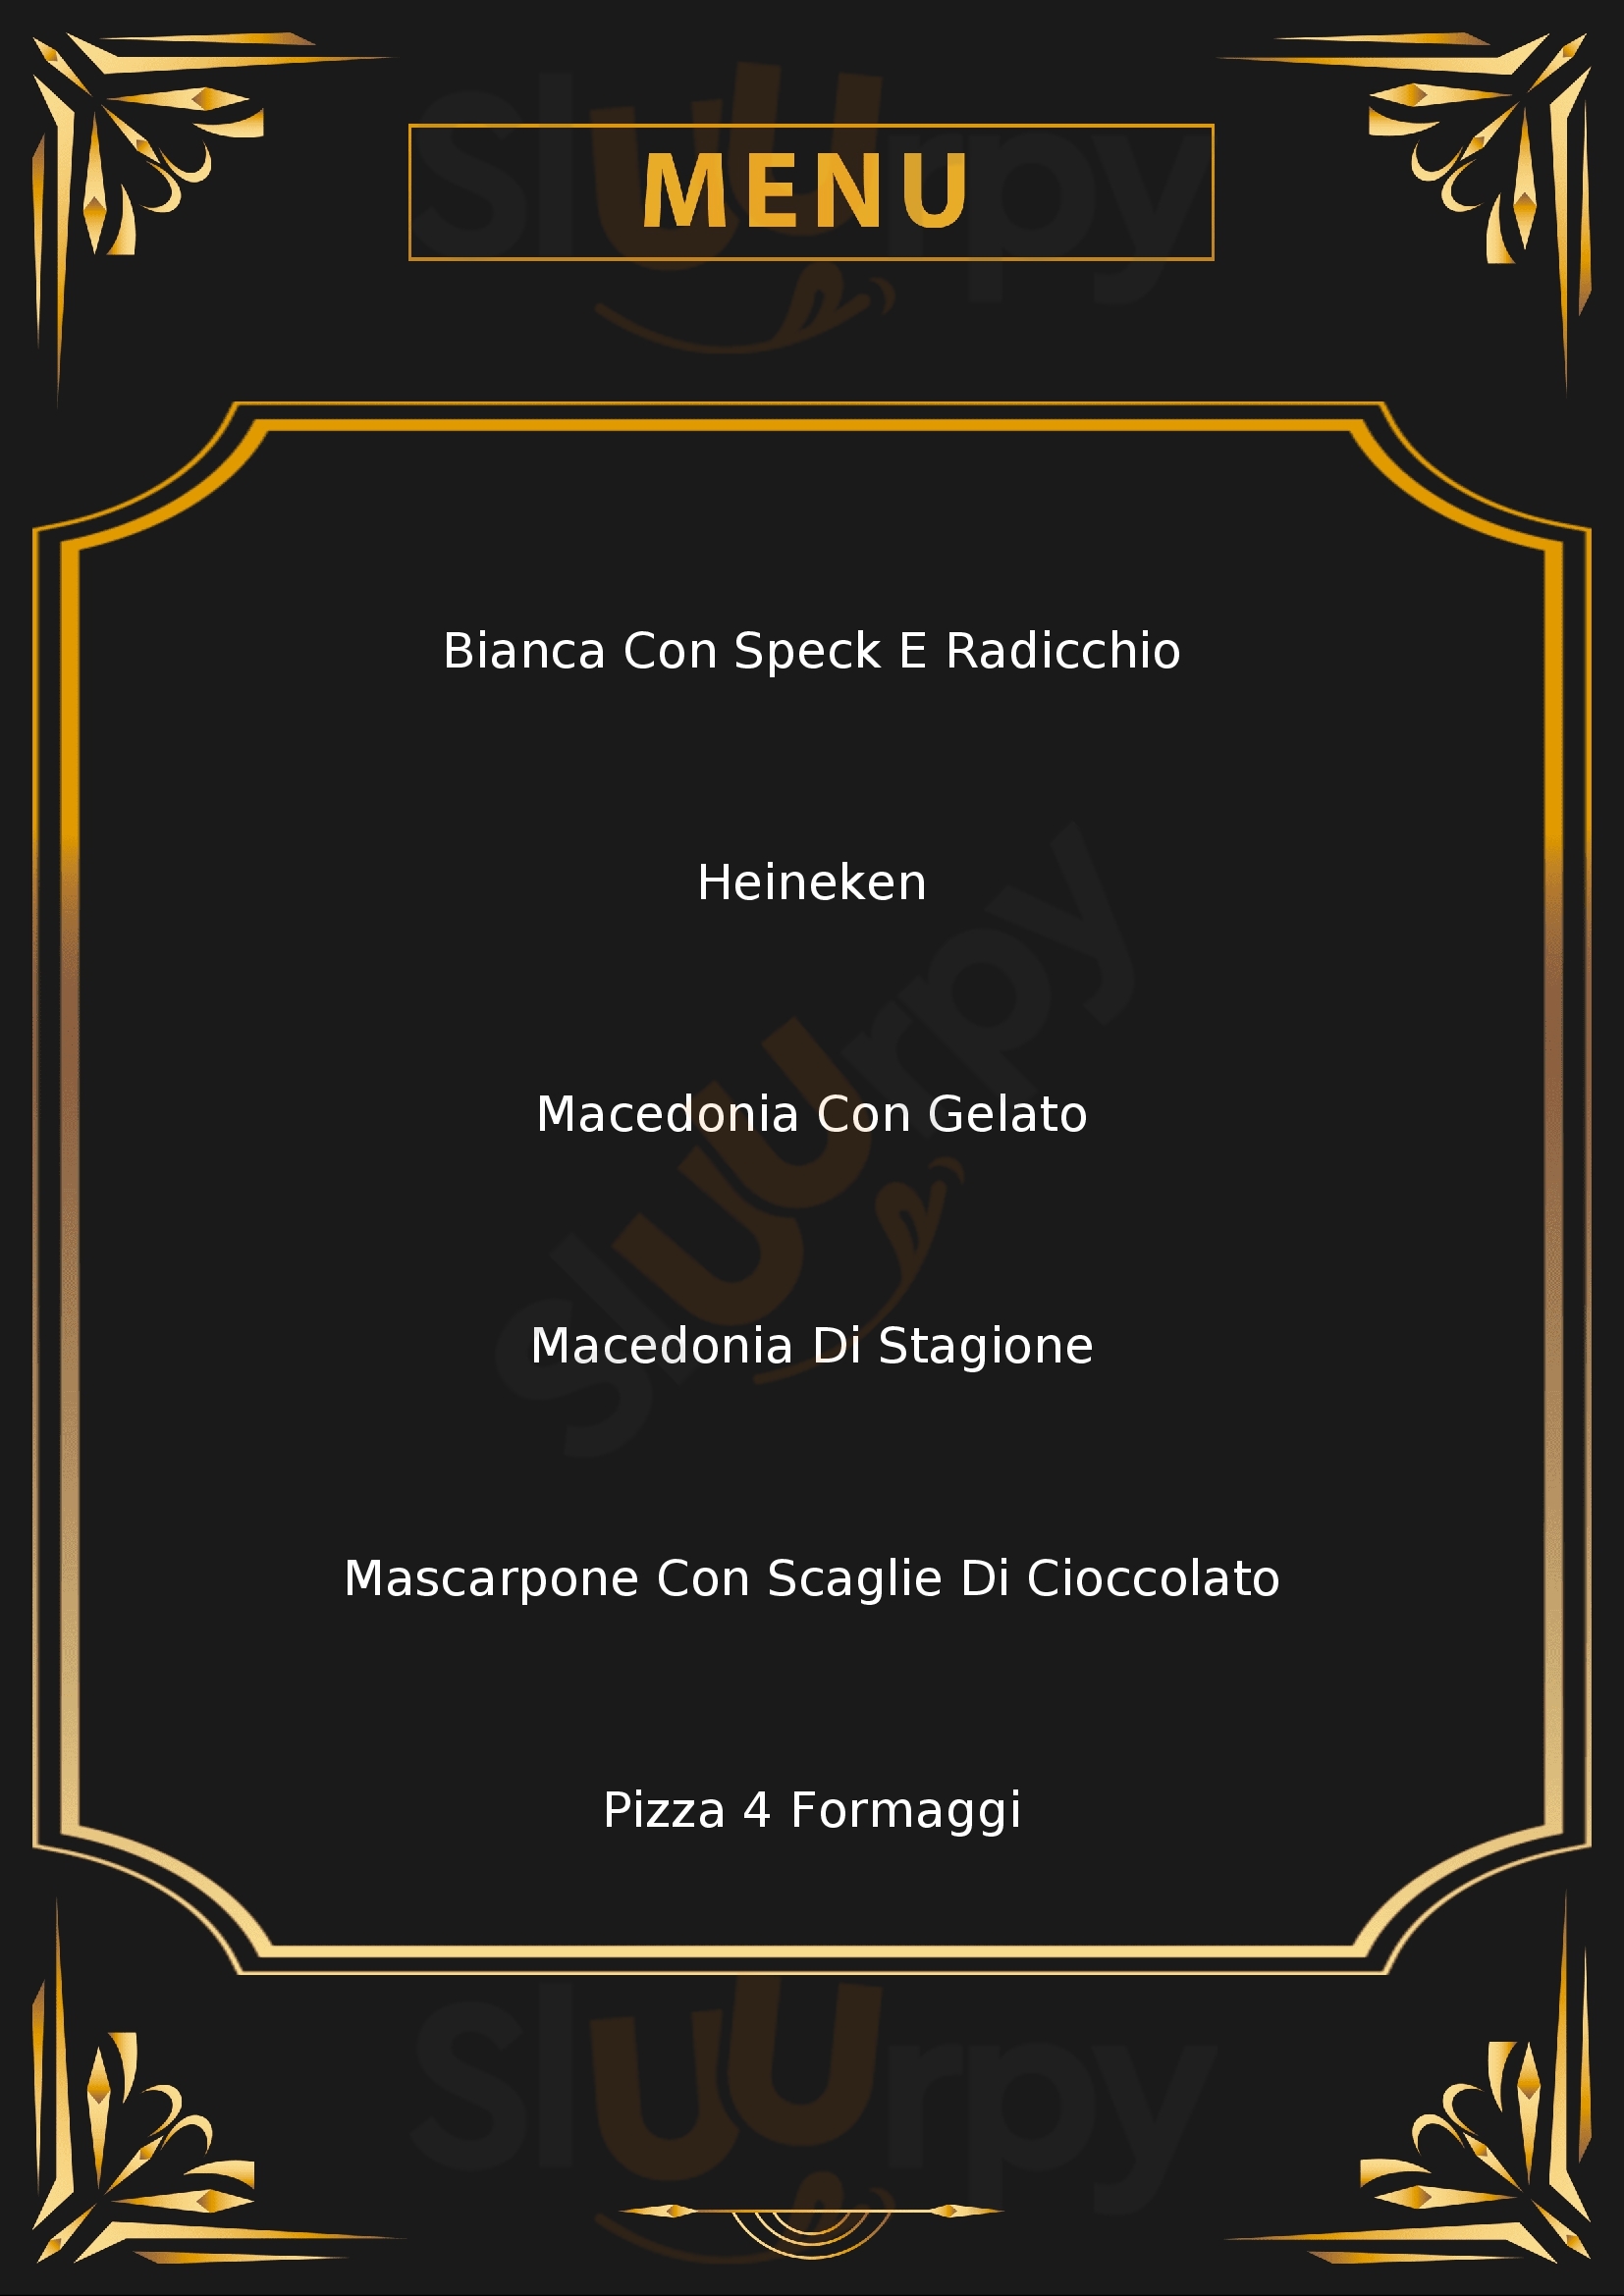 Ristorante Pizzeria La Coccinella Fiorano Modenese menù 1 pagina